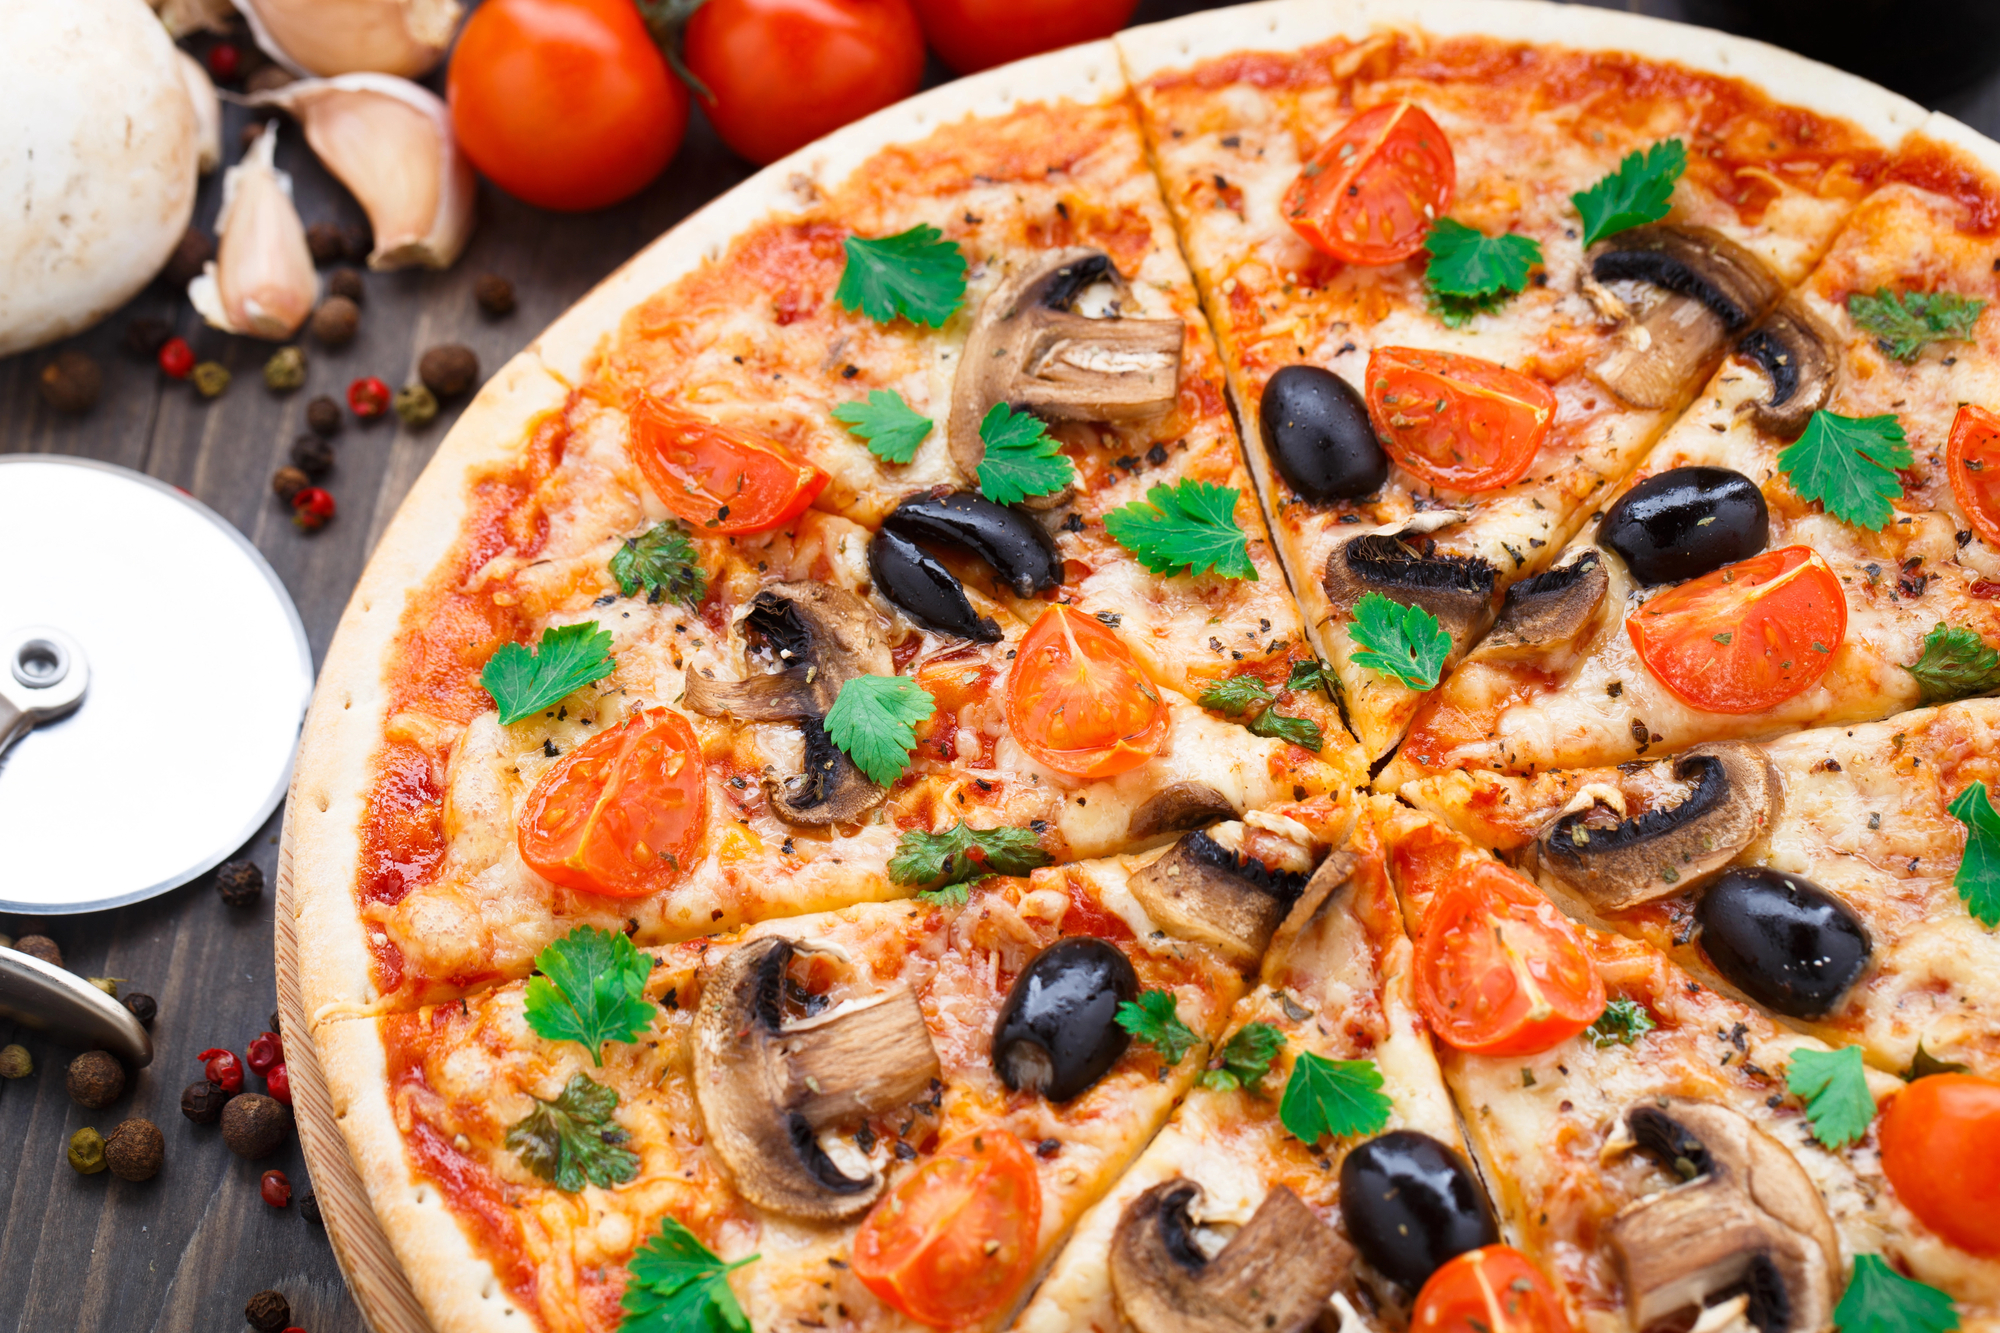 Receta de pizza vegana económica con pocos ingredientes